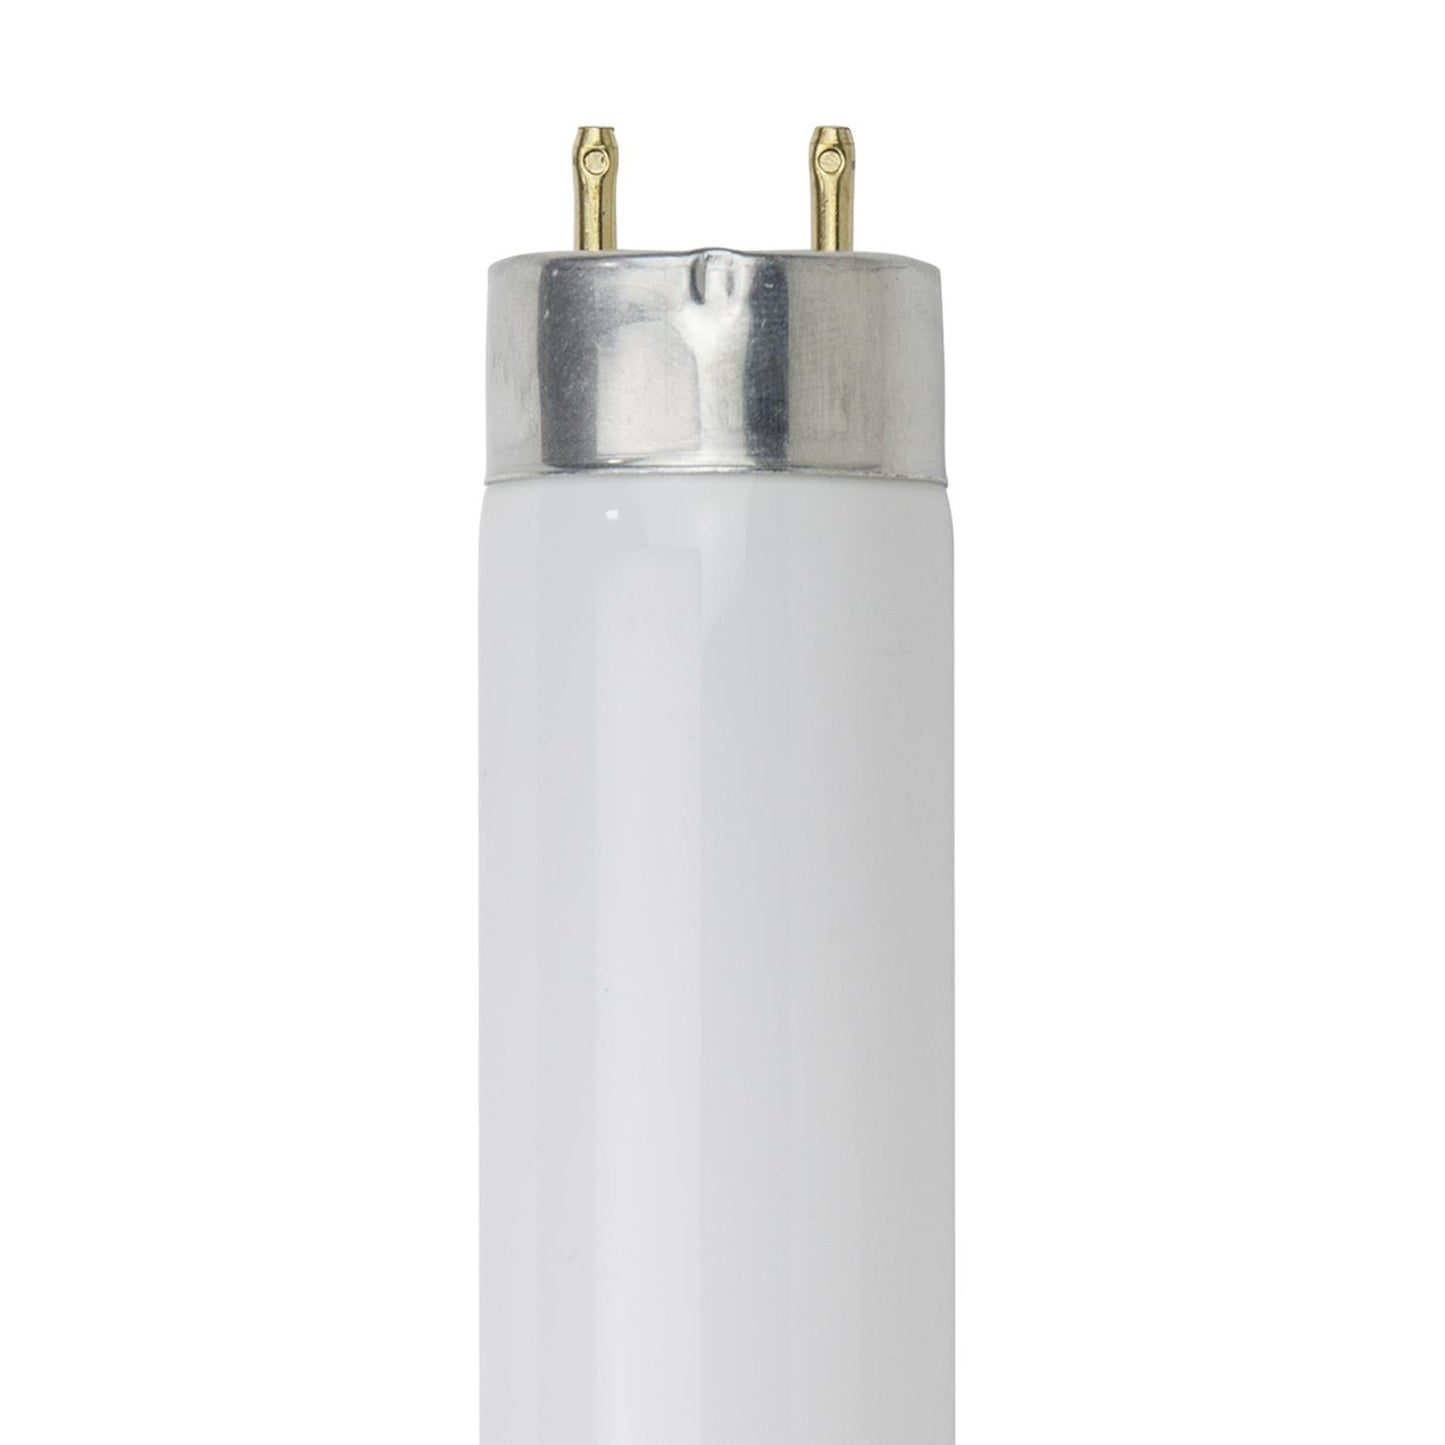 Sunlite F32T8/HL/SP841 32 Watt T8 TUBE Lamp Medium Bi-Pin (G13) Base Cool White